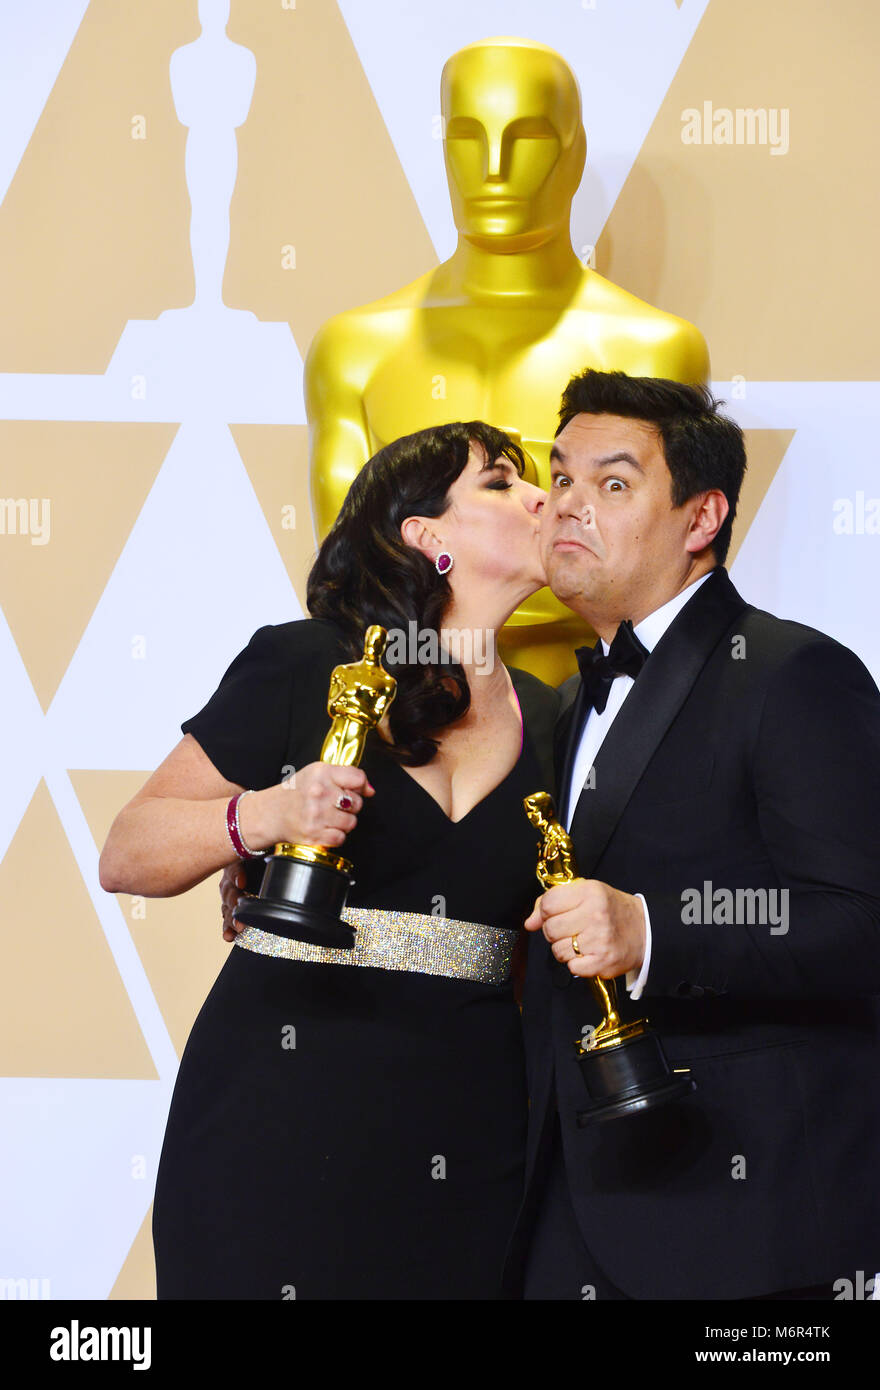 Canzone scrittori Kristen Anderson-Lopez (L) e Robert Lopez vincitori del miglior canzone originale per "Coco' pongono in sala stampa durante il novantesimo annuale di Academy Awards di Hollywood & Highland Center il 4 marzo 2018 a Hollywood, California Foto Stock